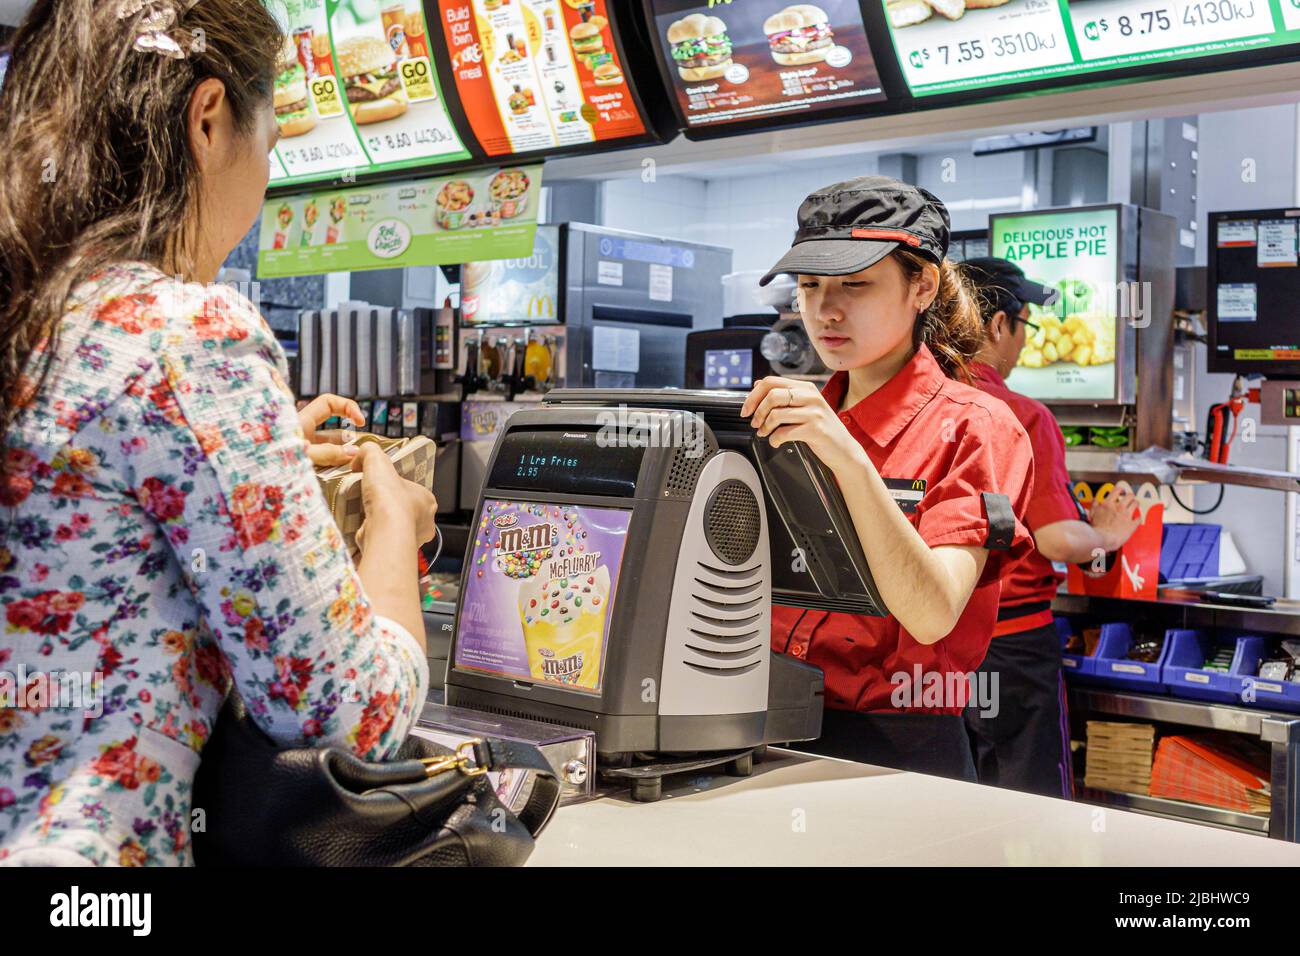 Sydney Australie, Circular Quay, McDonald's restaurant fast food comptoir de commande, femme asiatique employée travaillant à la commande payer client Banque D'Images